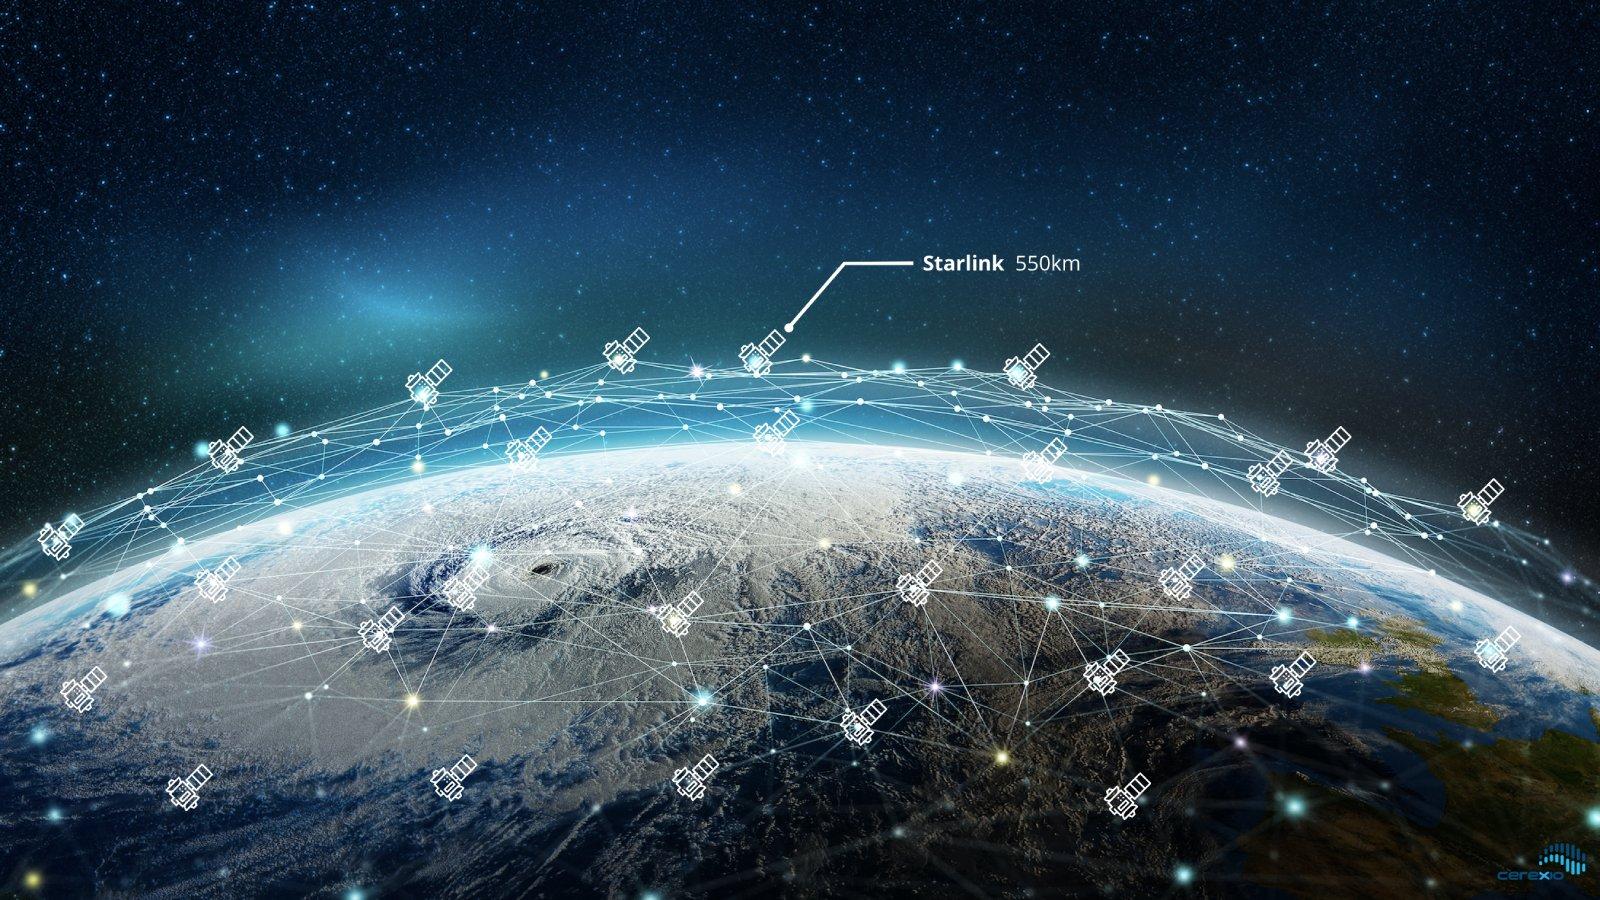 Projekt „Starlink“: Predviđeno lansiranje čak 42 hiljade satelita - Avaz